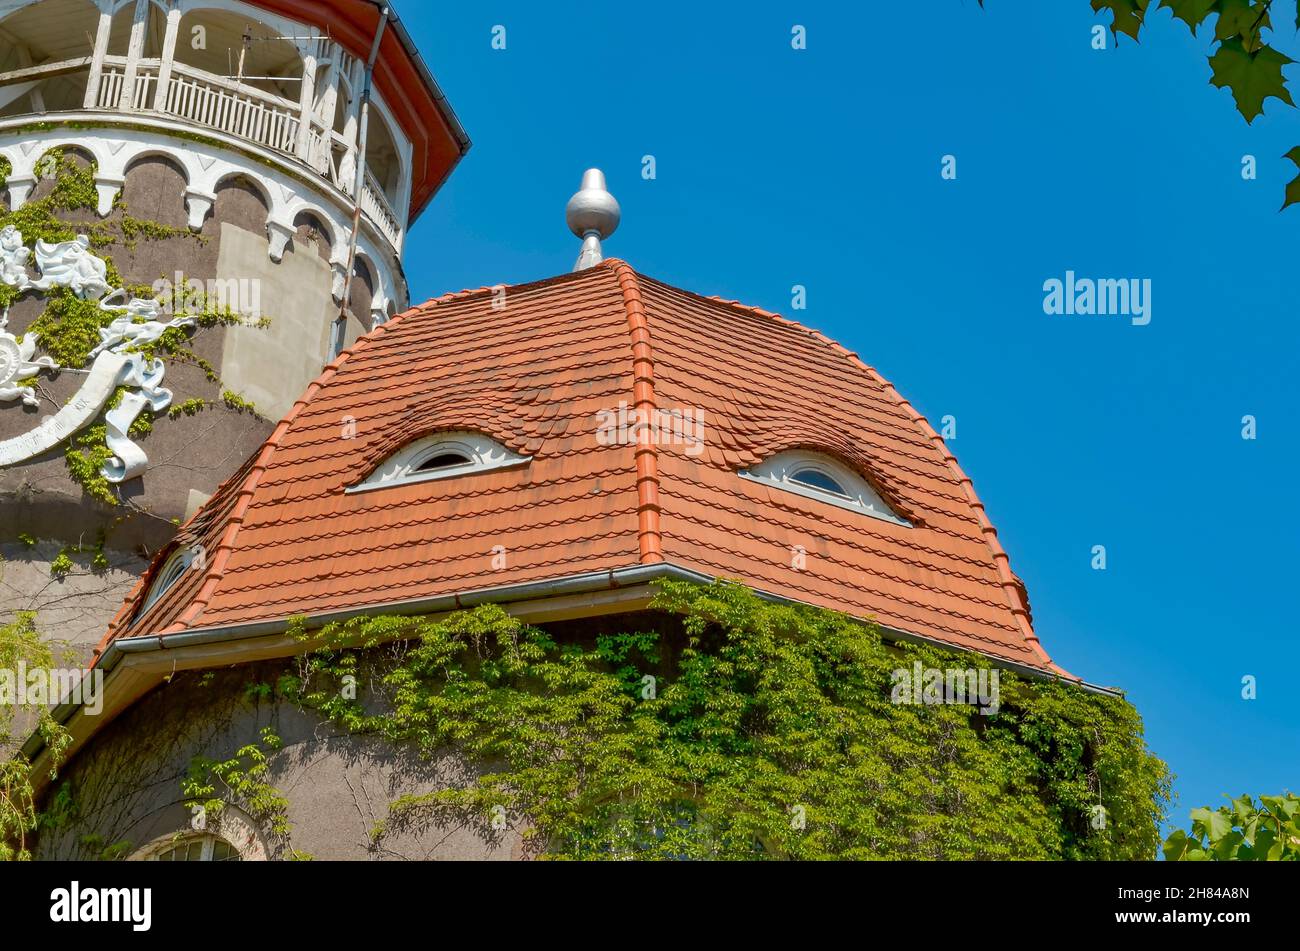 Svetlogorsk, Kaliningrad Oblast, Russia. Giugno - 2. Edificio Balneario con torre d'acqua. Le finestre del tetto della costruzione assomiglia agli occhi umani Foto Stock